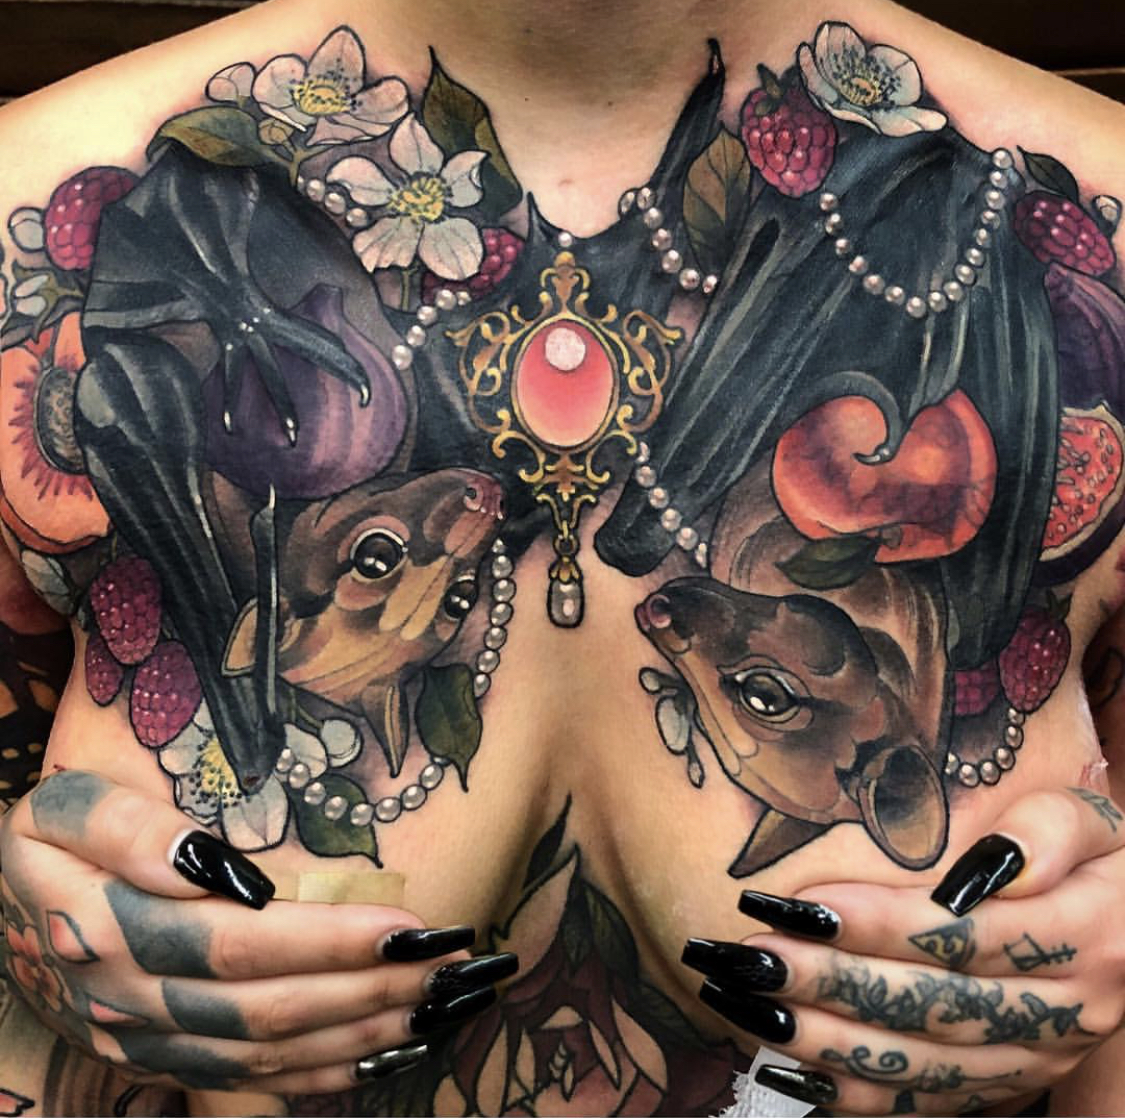 Bat chestpiece tattoo